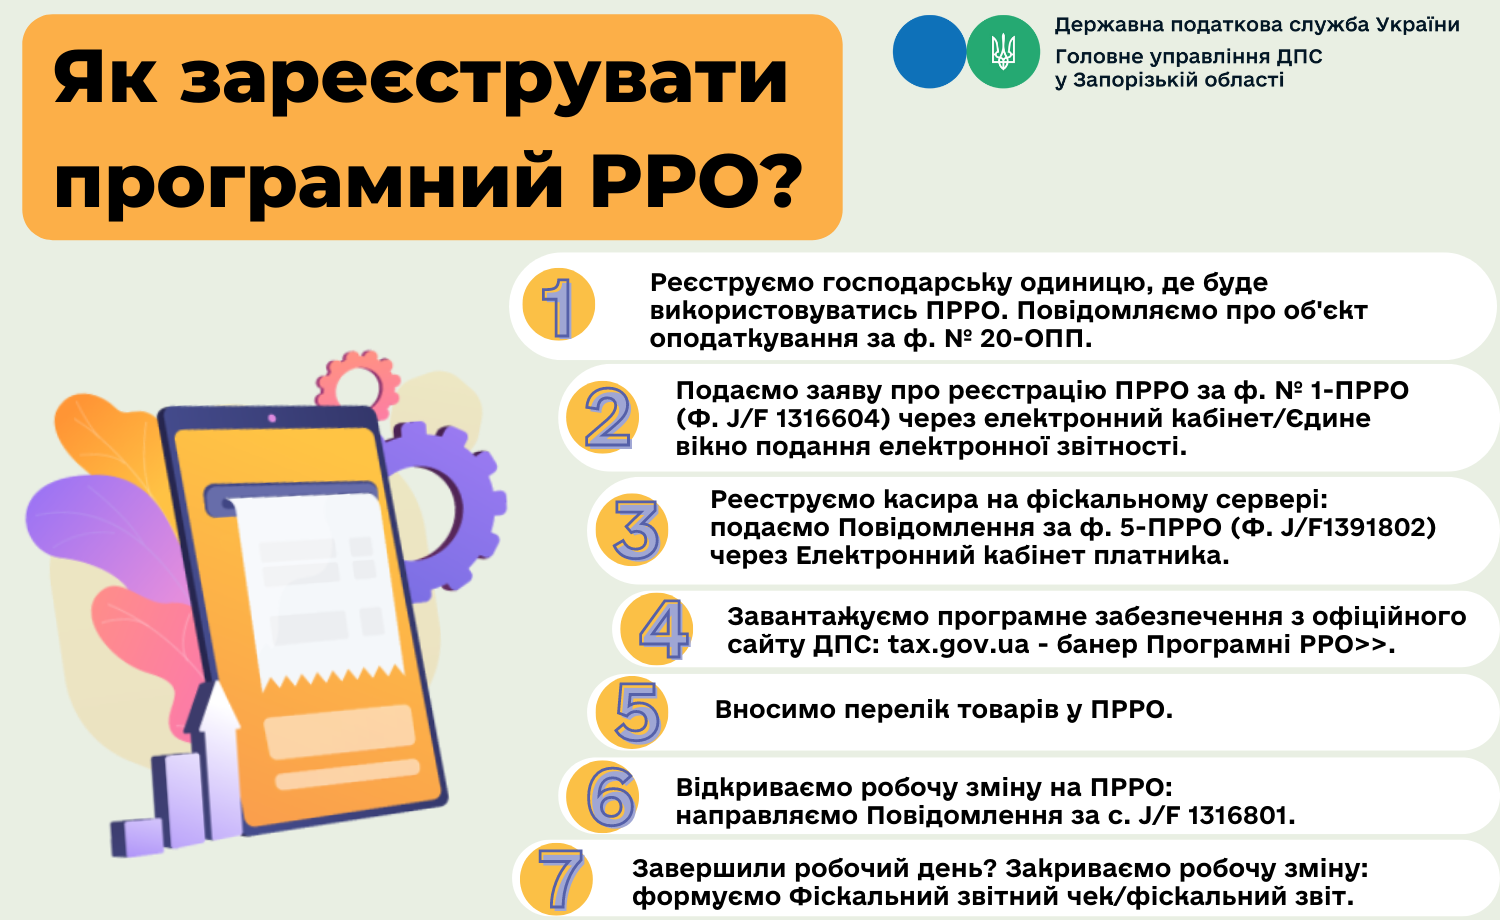 Як зареєструвати програмний РРО? ДПС України